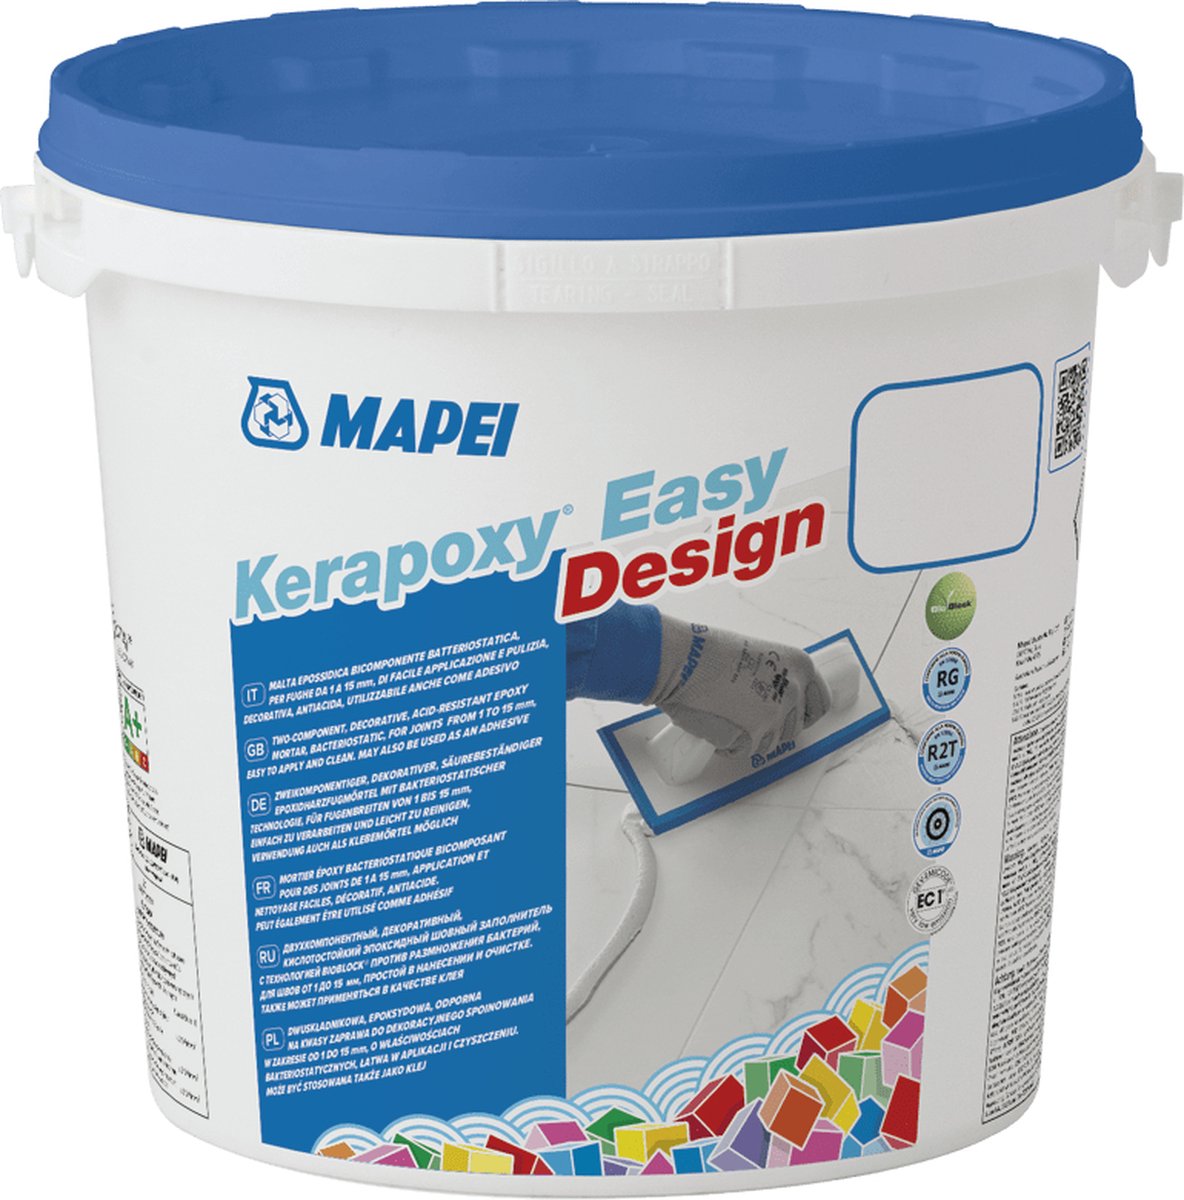 Mapei Kerapoxy Easy Design Voegmortel - Voor Keramische Tegels & Natuursteen - Kleur 111 Zilvergrijs - 3 kg - Mapei